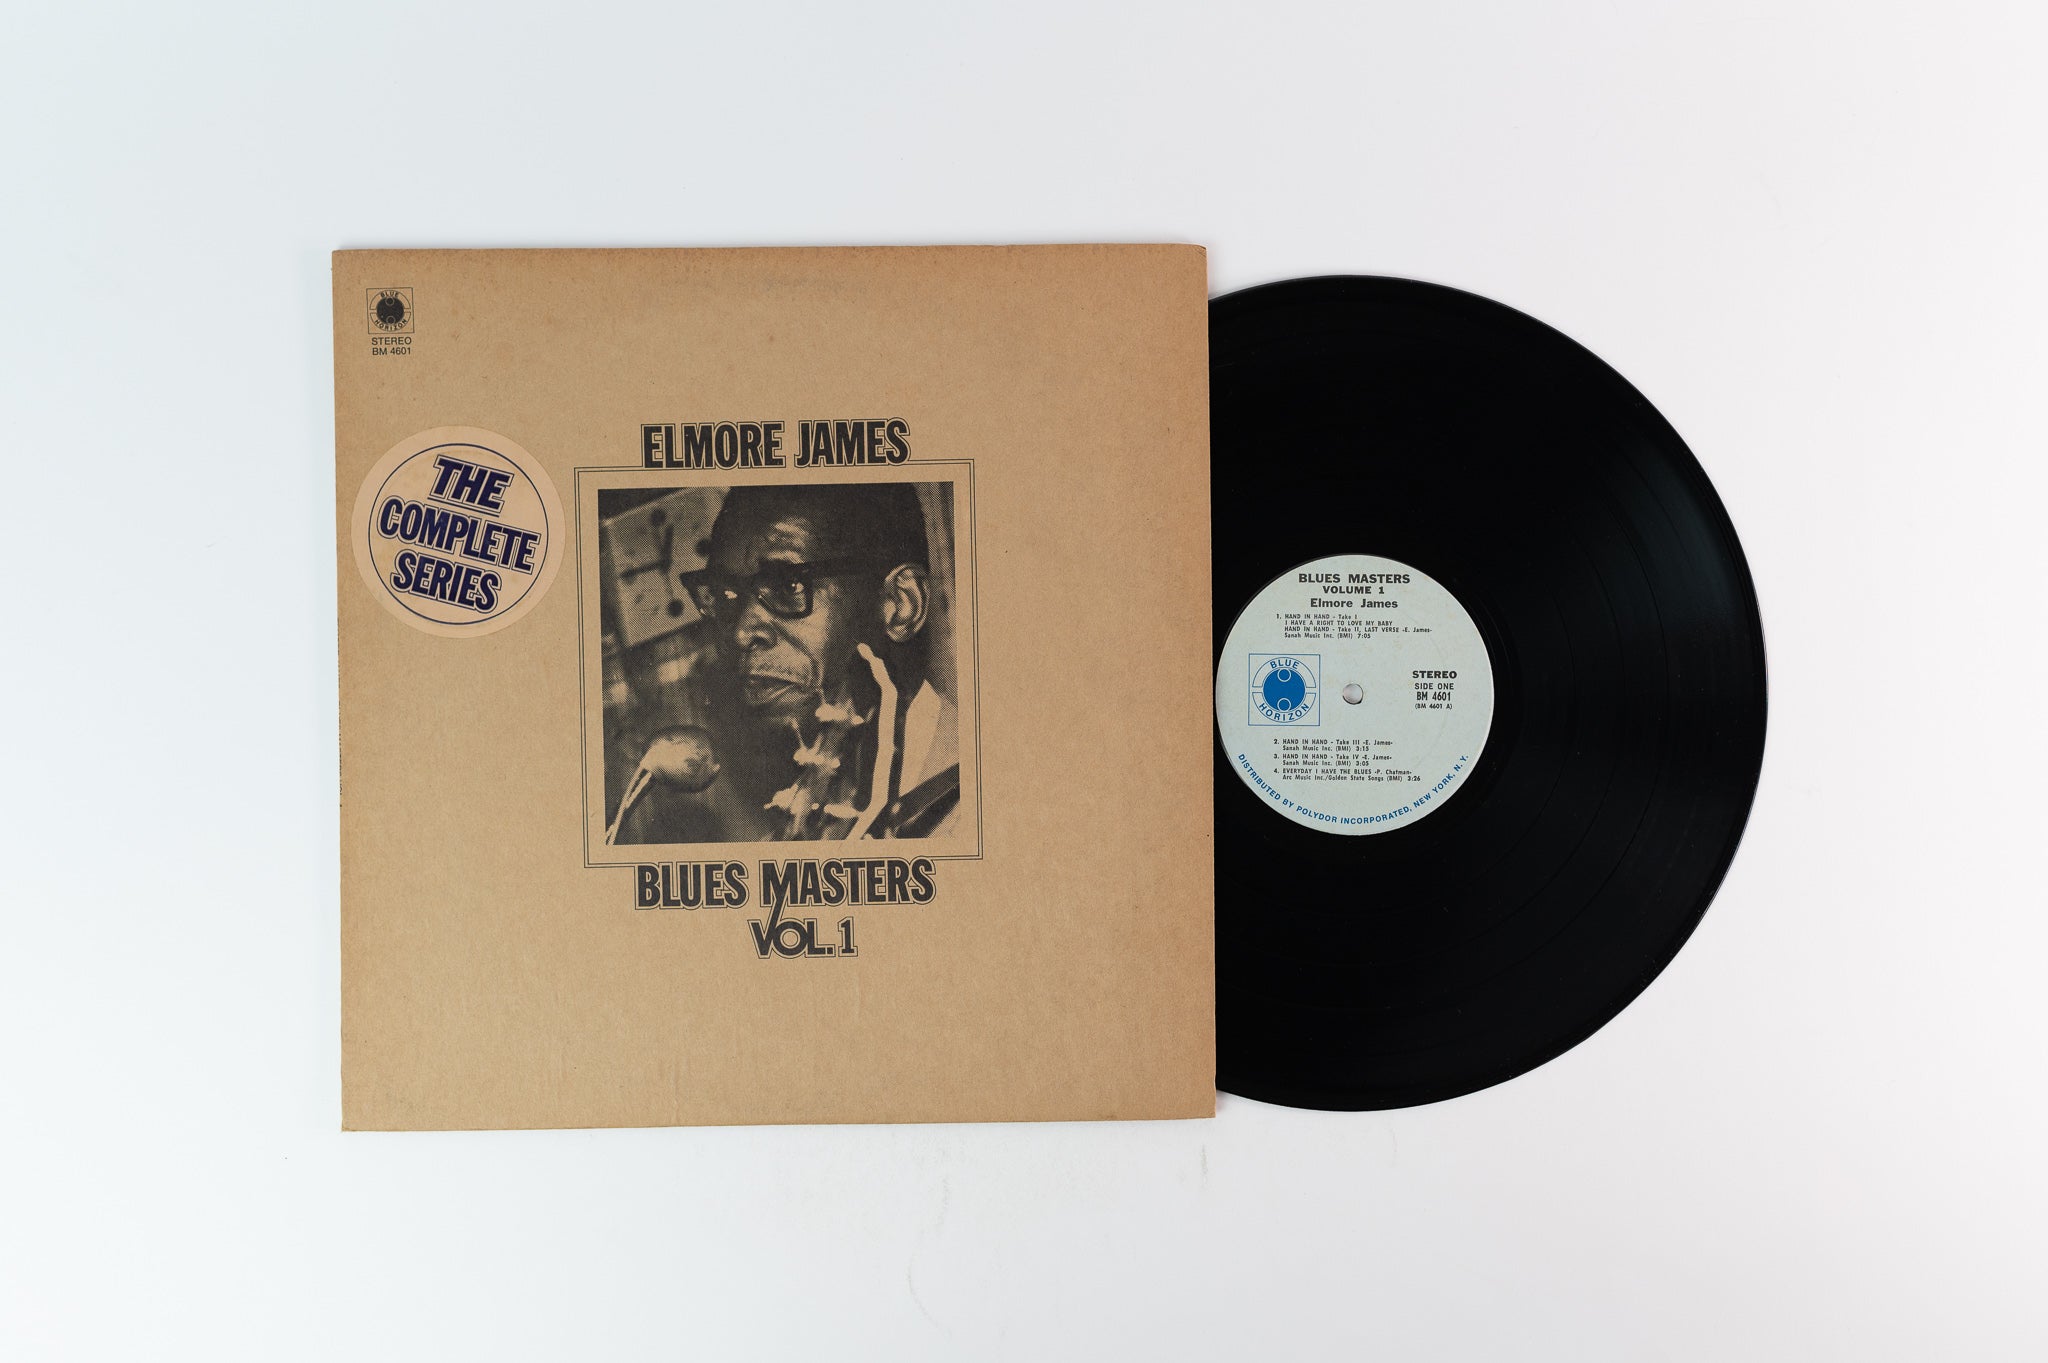 Elmore James - Blues Masters Vol. 1 on Blue Horizon